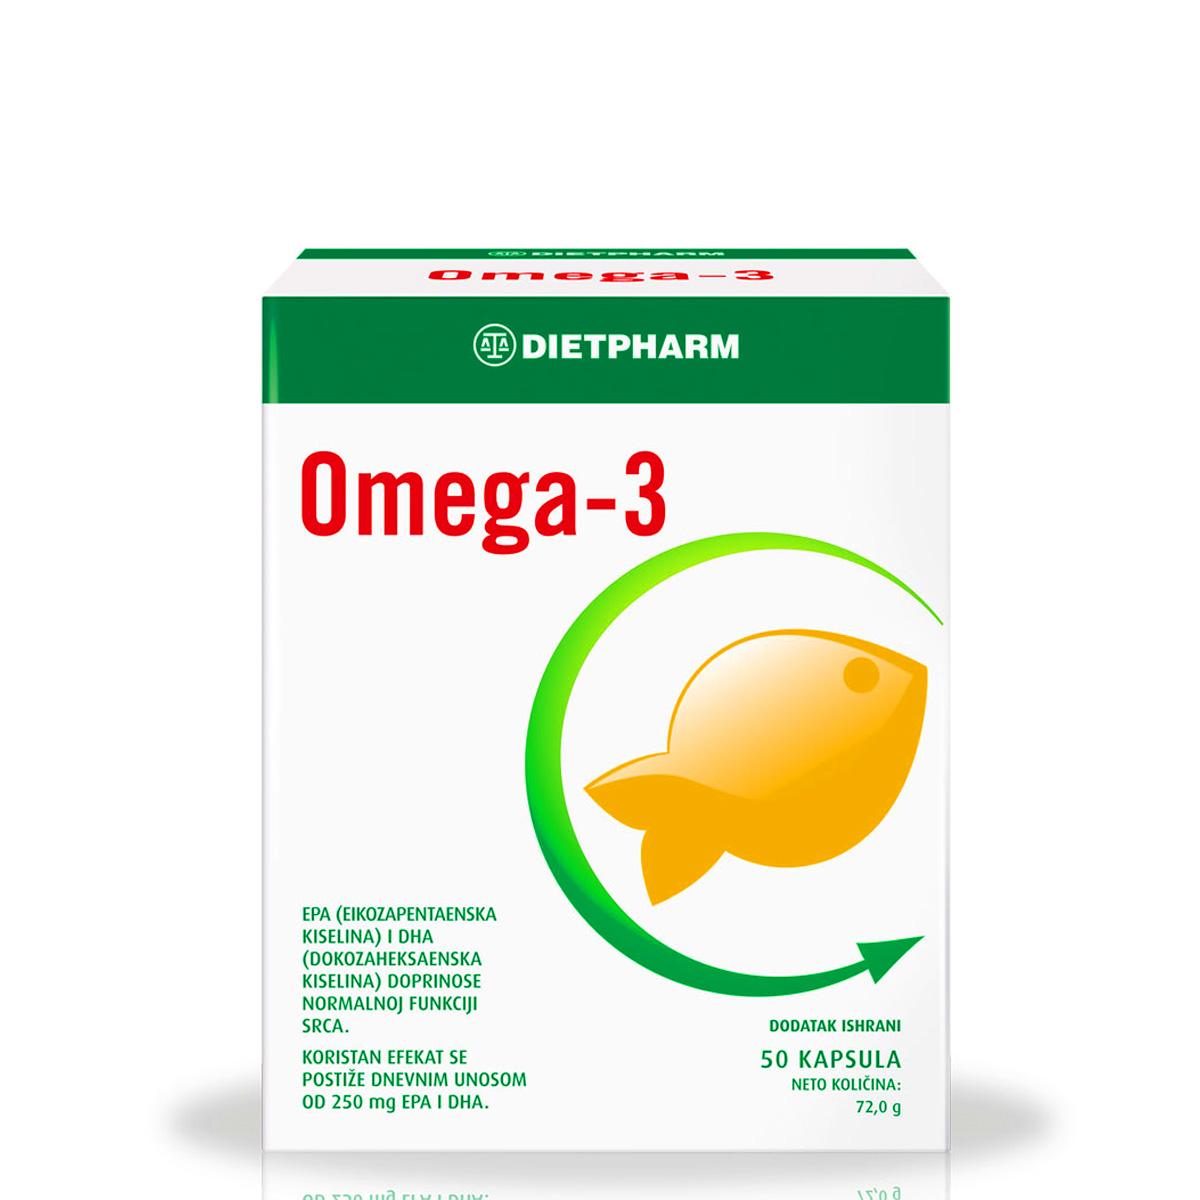 DIETPHARM Omega 3 masne kiseline 50 kapsula 112458